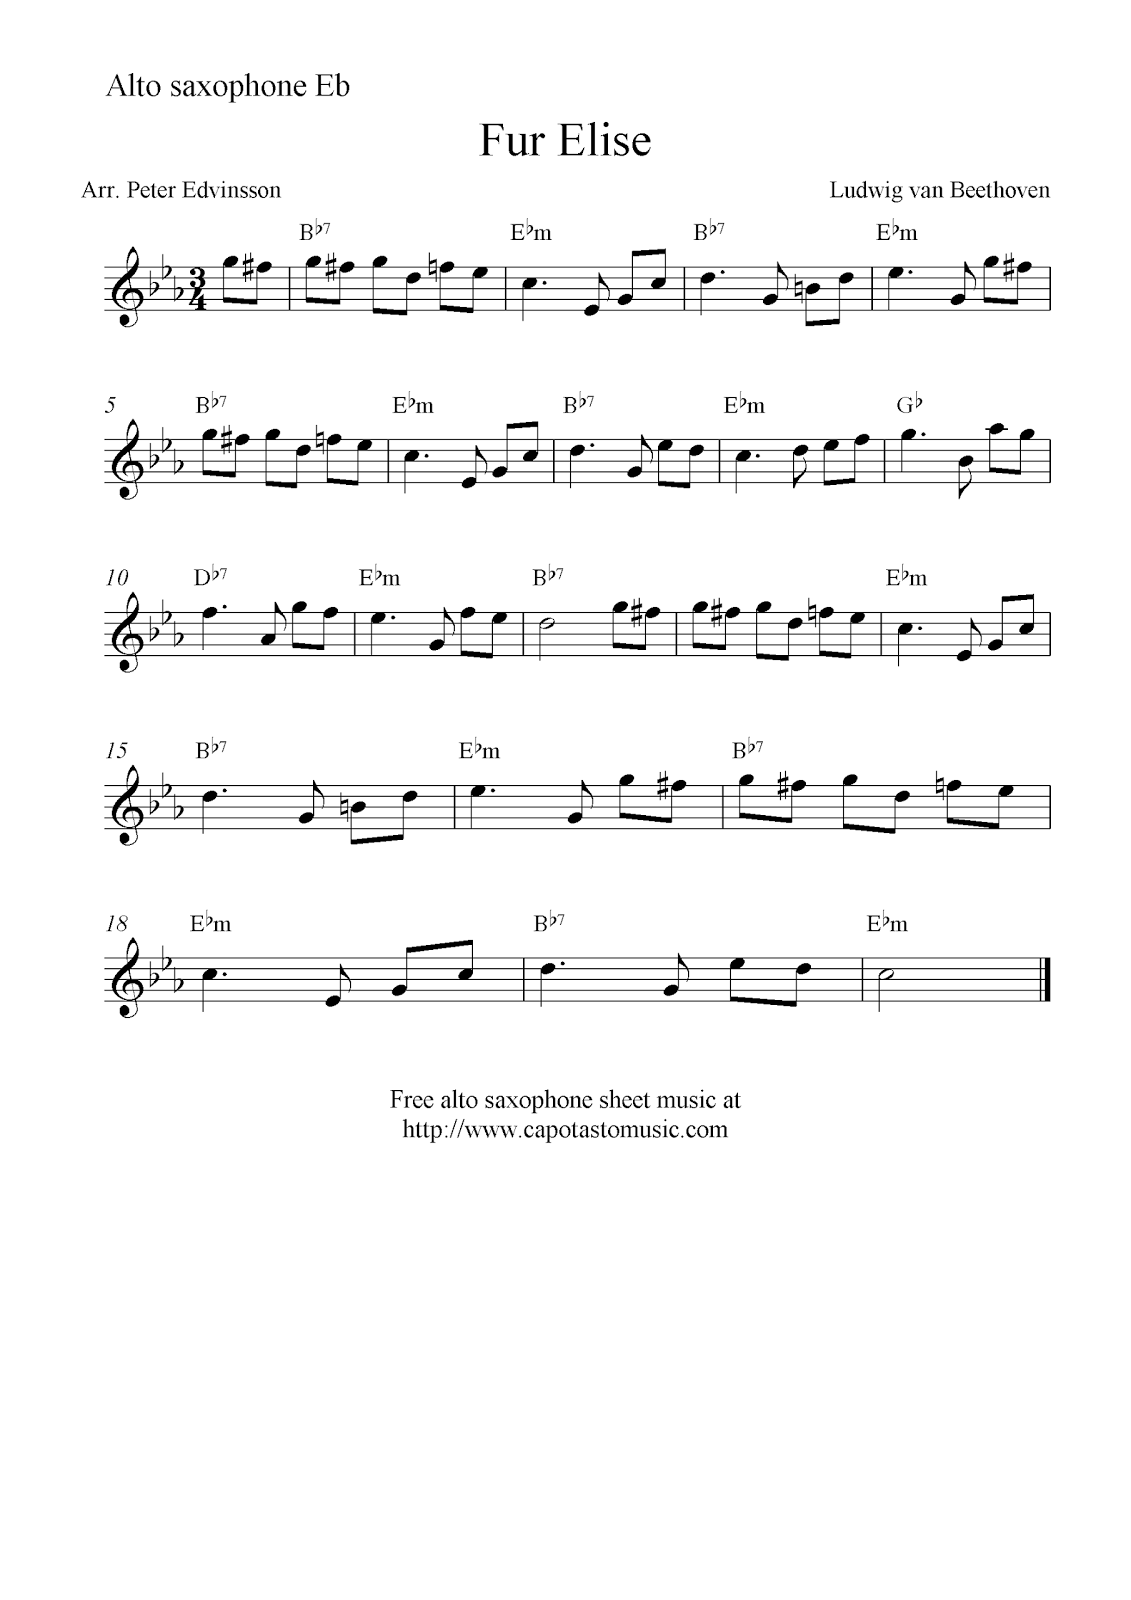 Fur Elise Free Alto Saxophone Sheet Music Notes